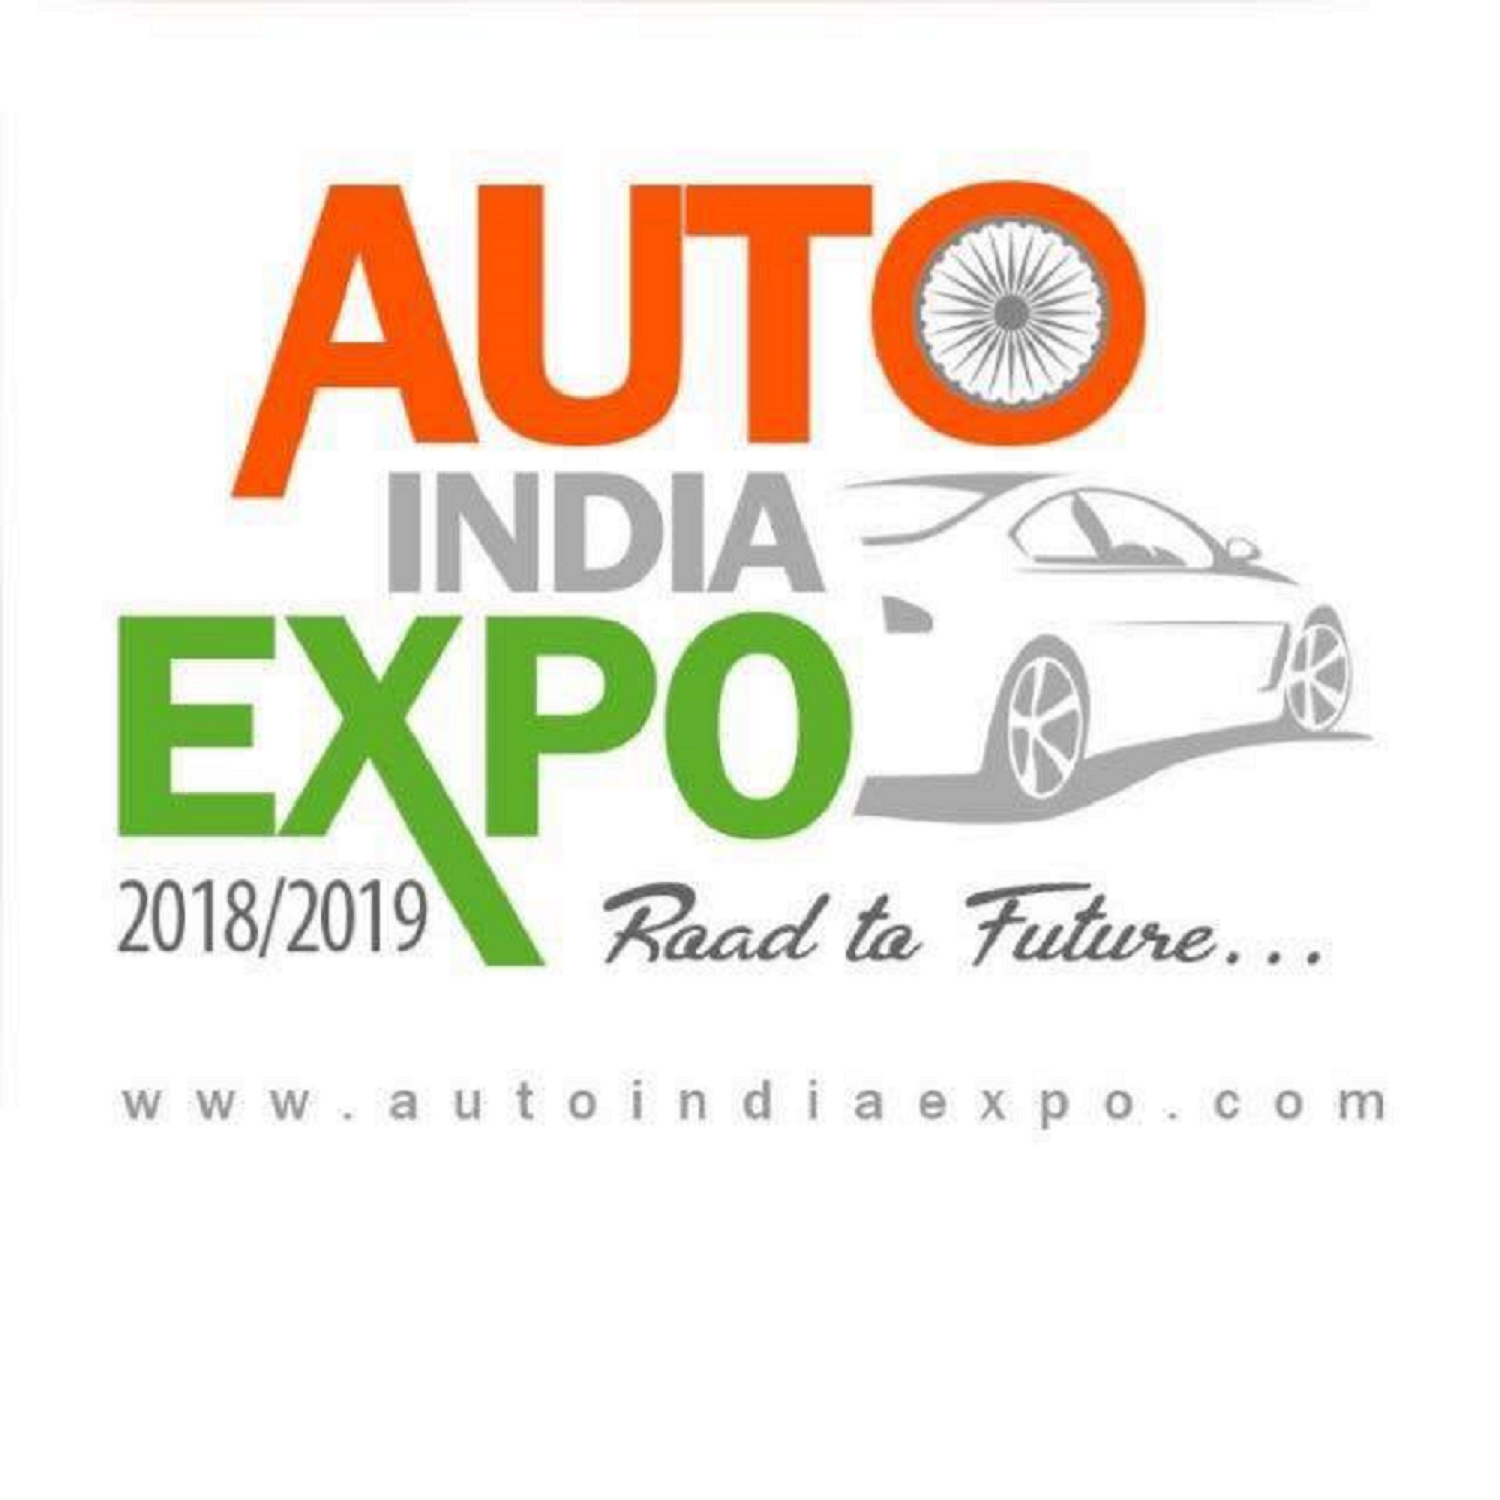 Auto India Expo, Nagpur, Maharashtra, India